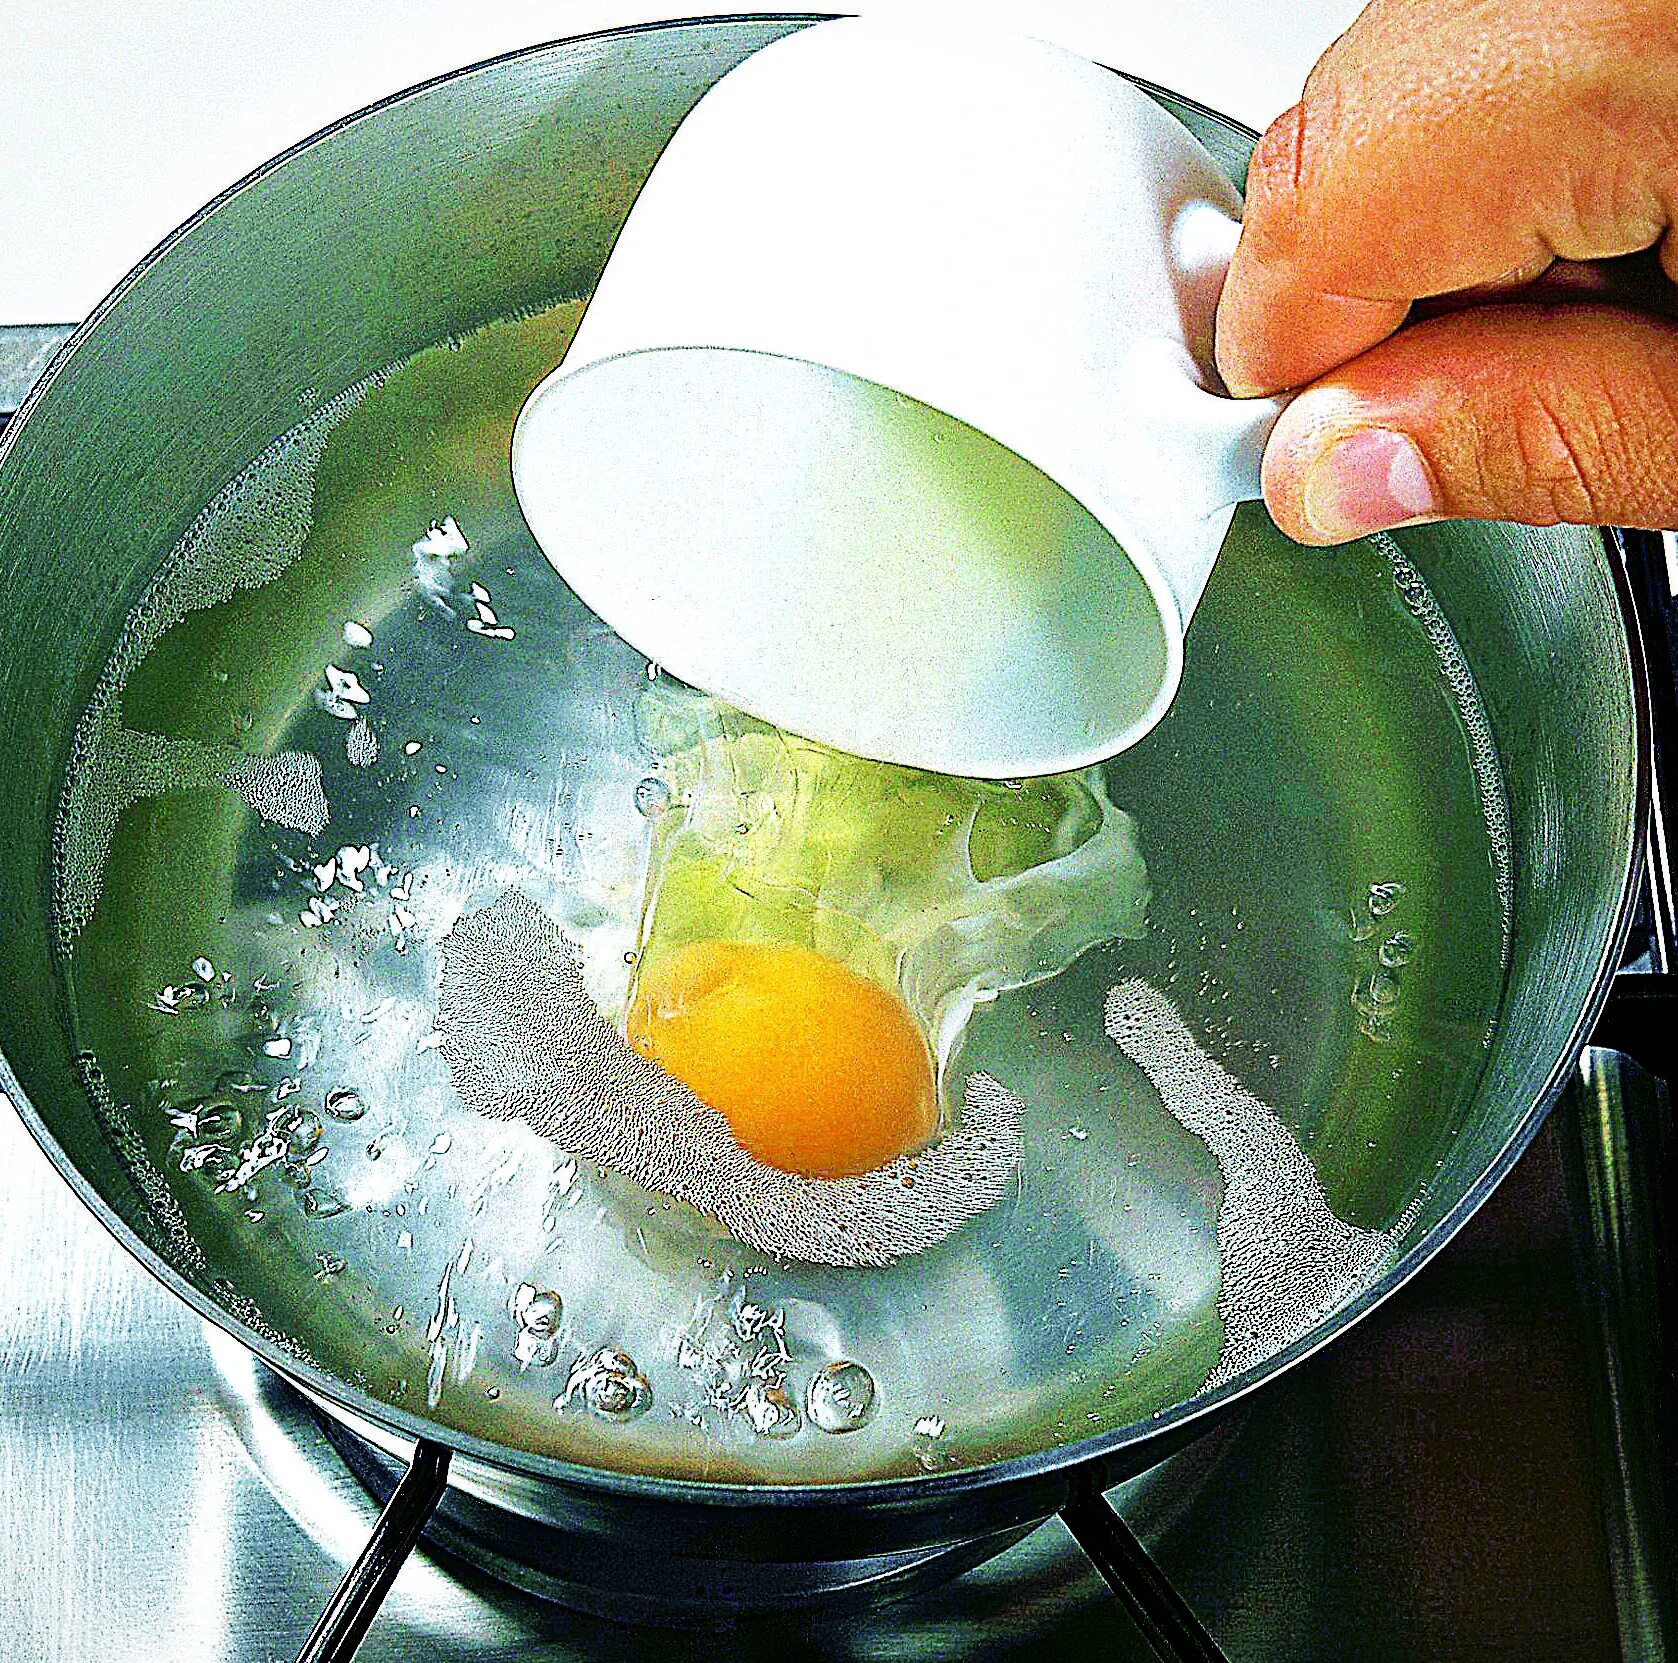 Яйцо пашот в мешочке. Варка яиц пашот. Яйцо пашот в кипящую воду. Яйцо пашот в кастрюле. Яйцо пашот варят минут